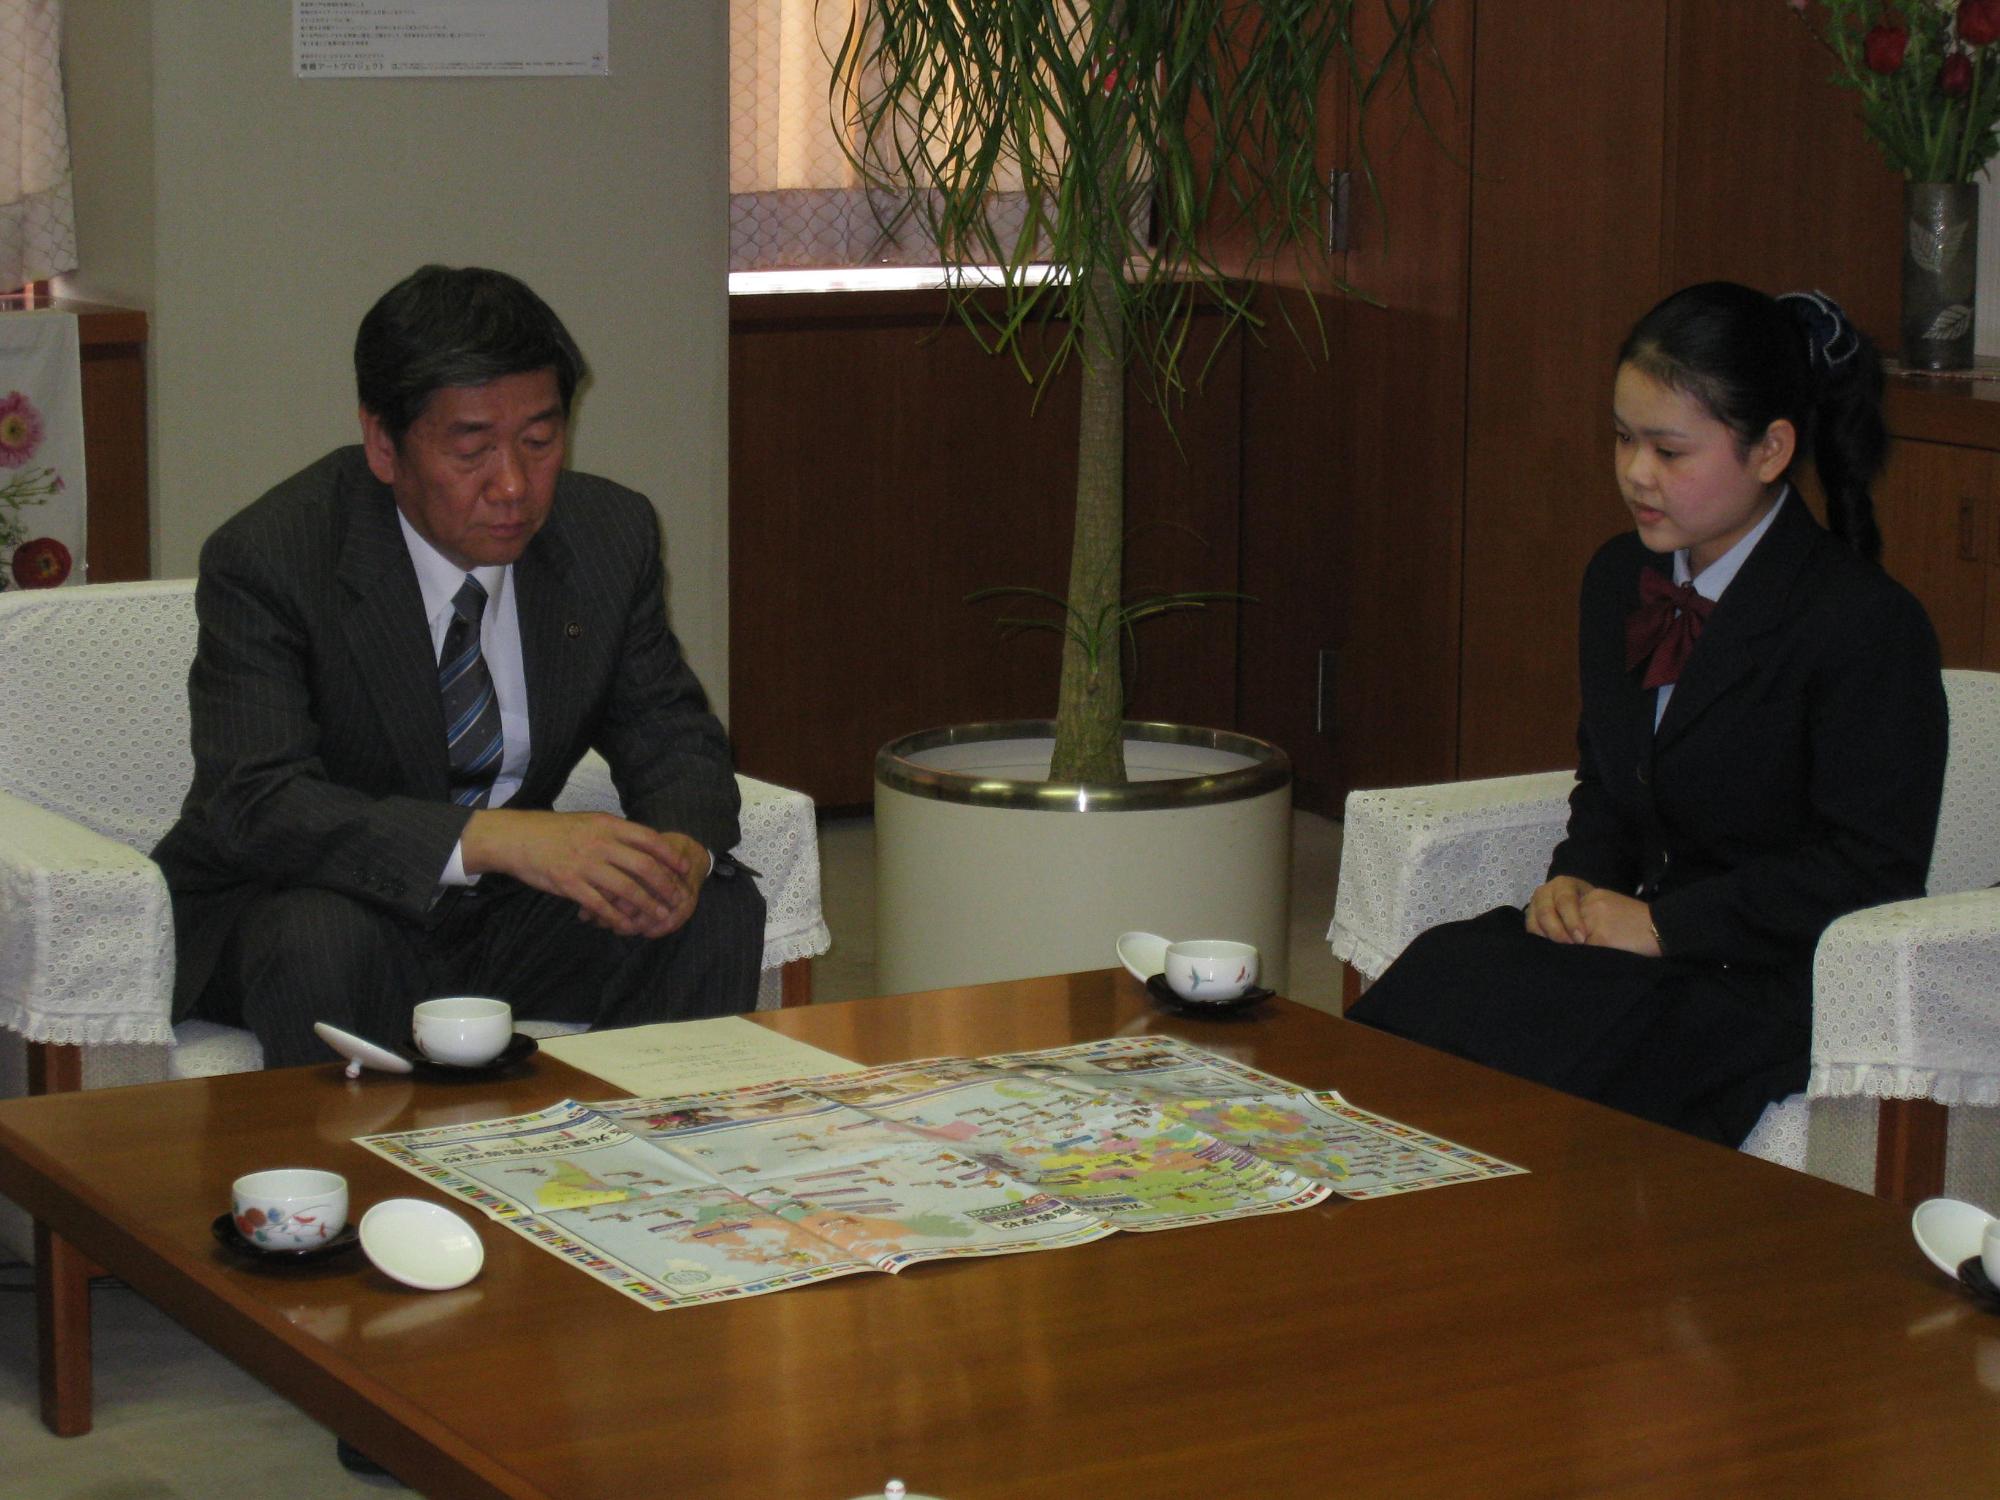 タン・チェンターさんが、小林市長に表敬訪問し、会話している写真